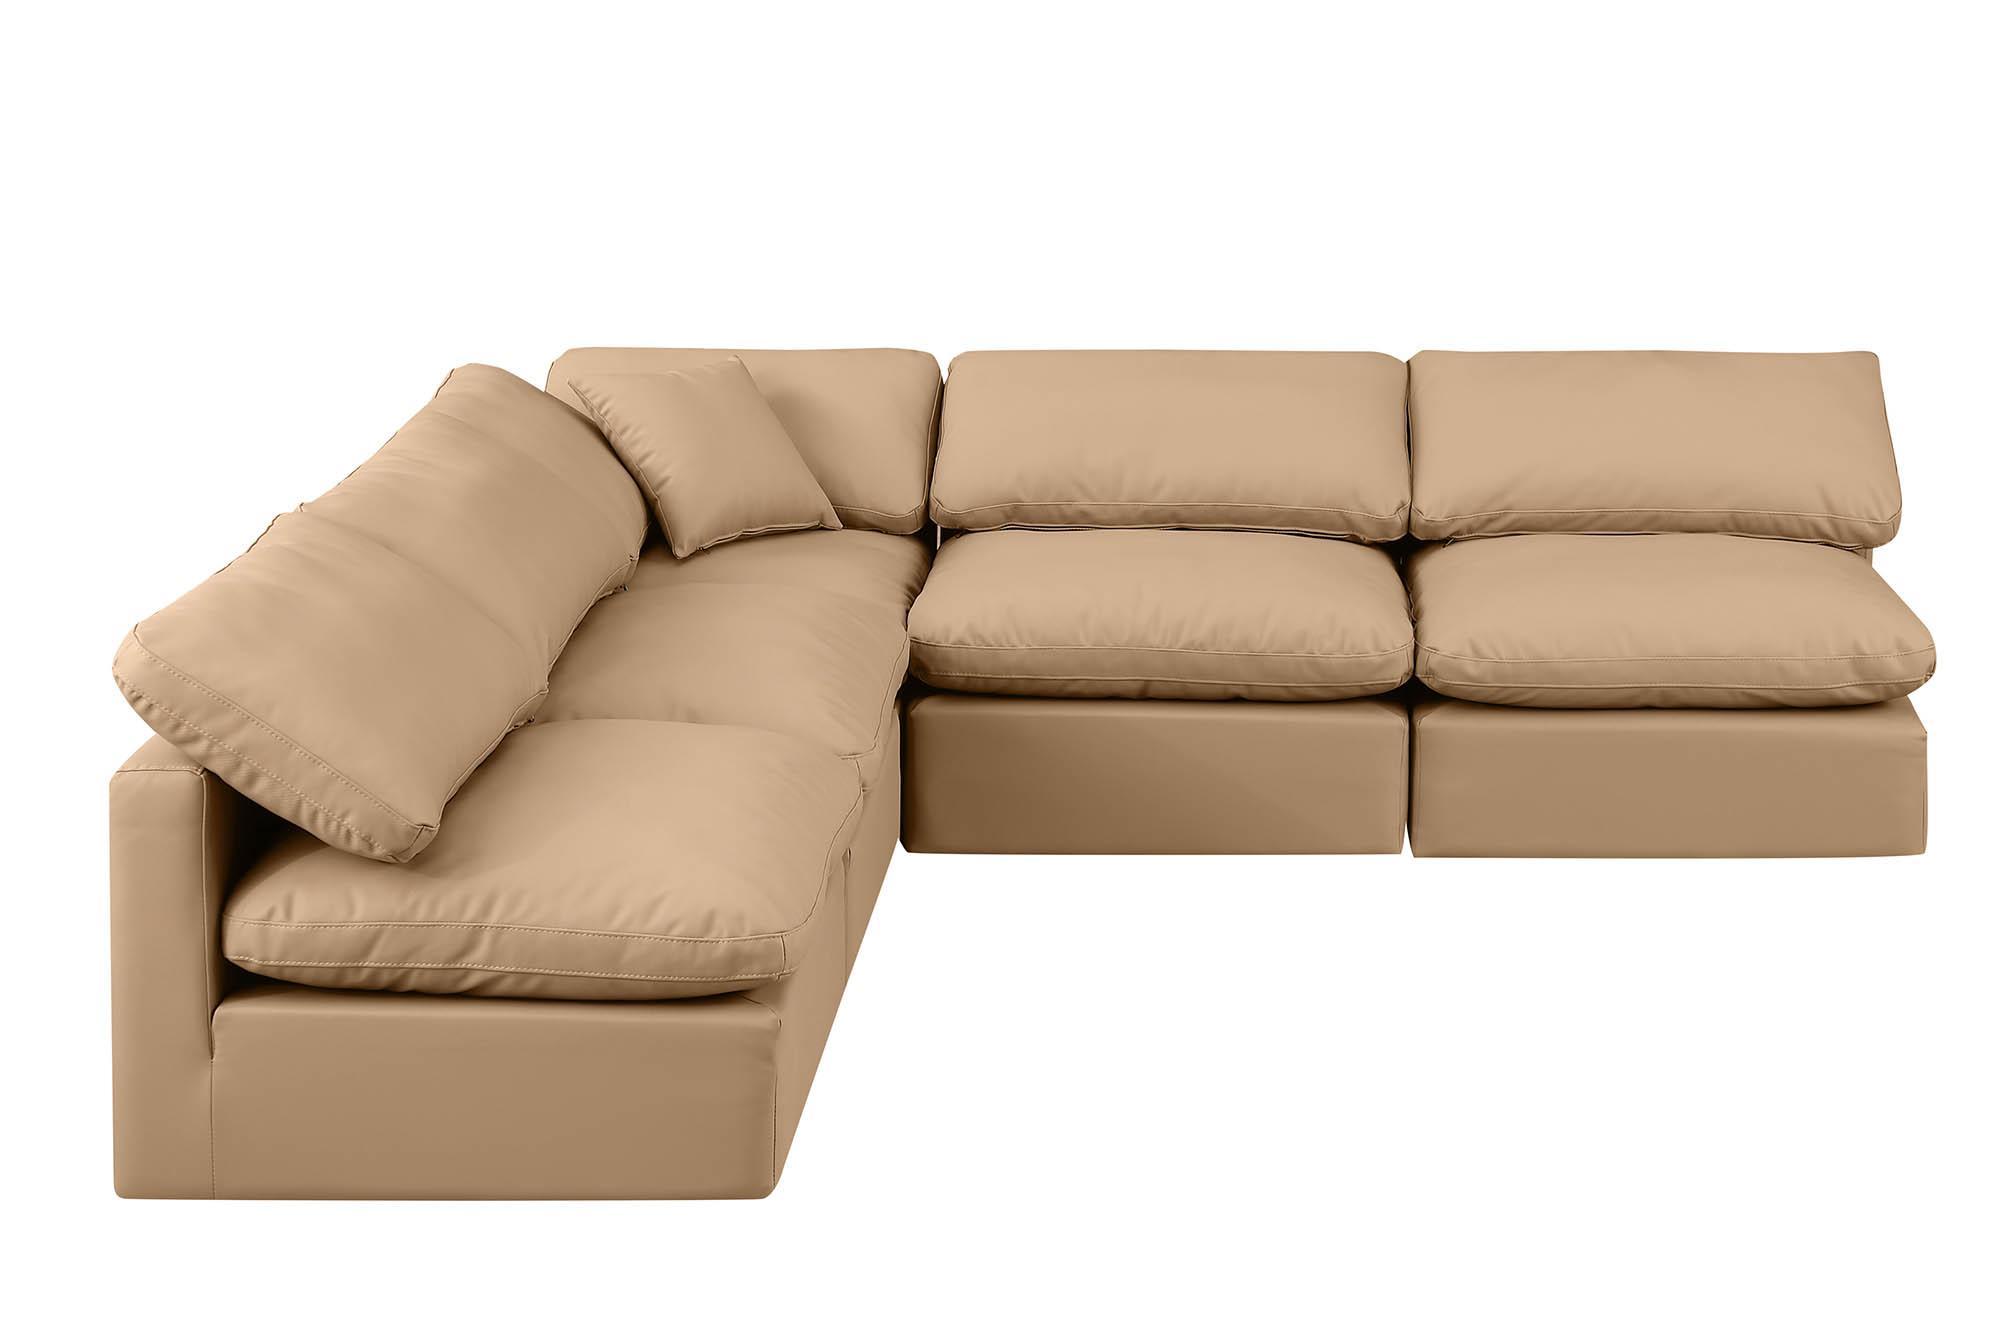 

    
Meridian Furniture INDULGE 146Tan-Sec5B Modular Sectional Sofa Tan 146Tan-Sec5B
